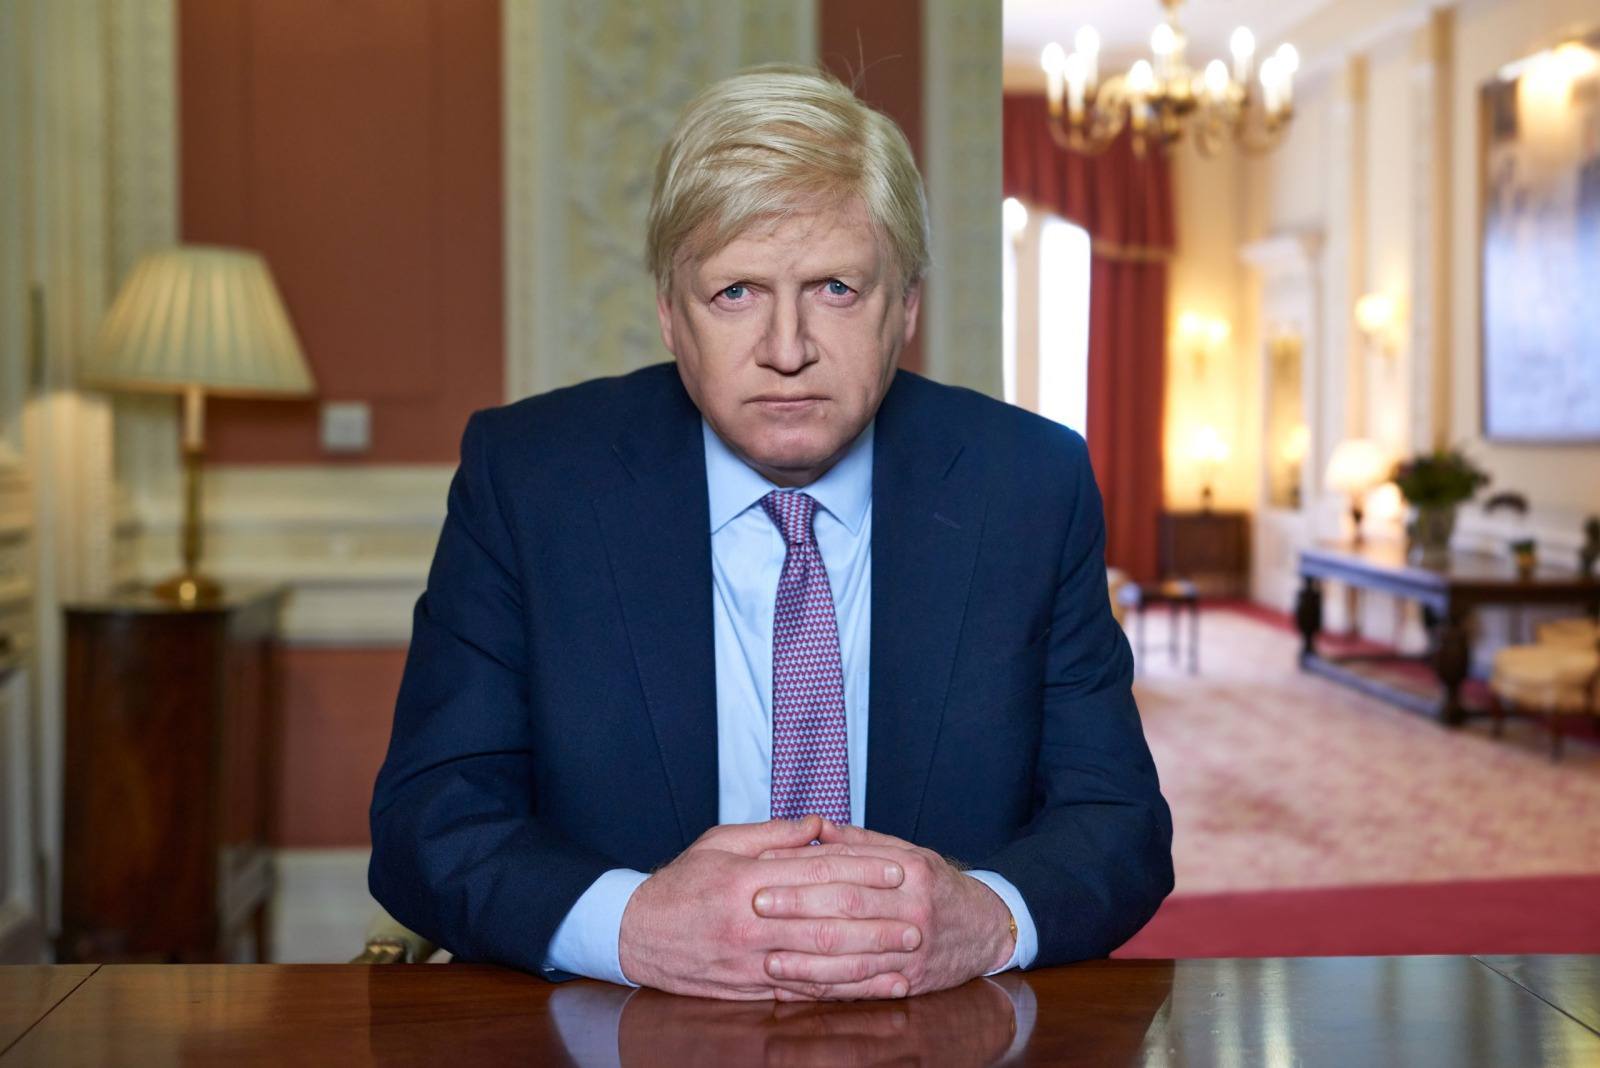 This England se basa en los tumultuosos primeros meses de Boris Johnson como Primer Ministro del Reino Unido